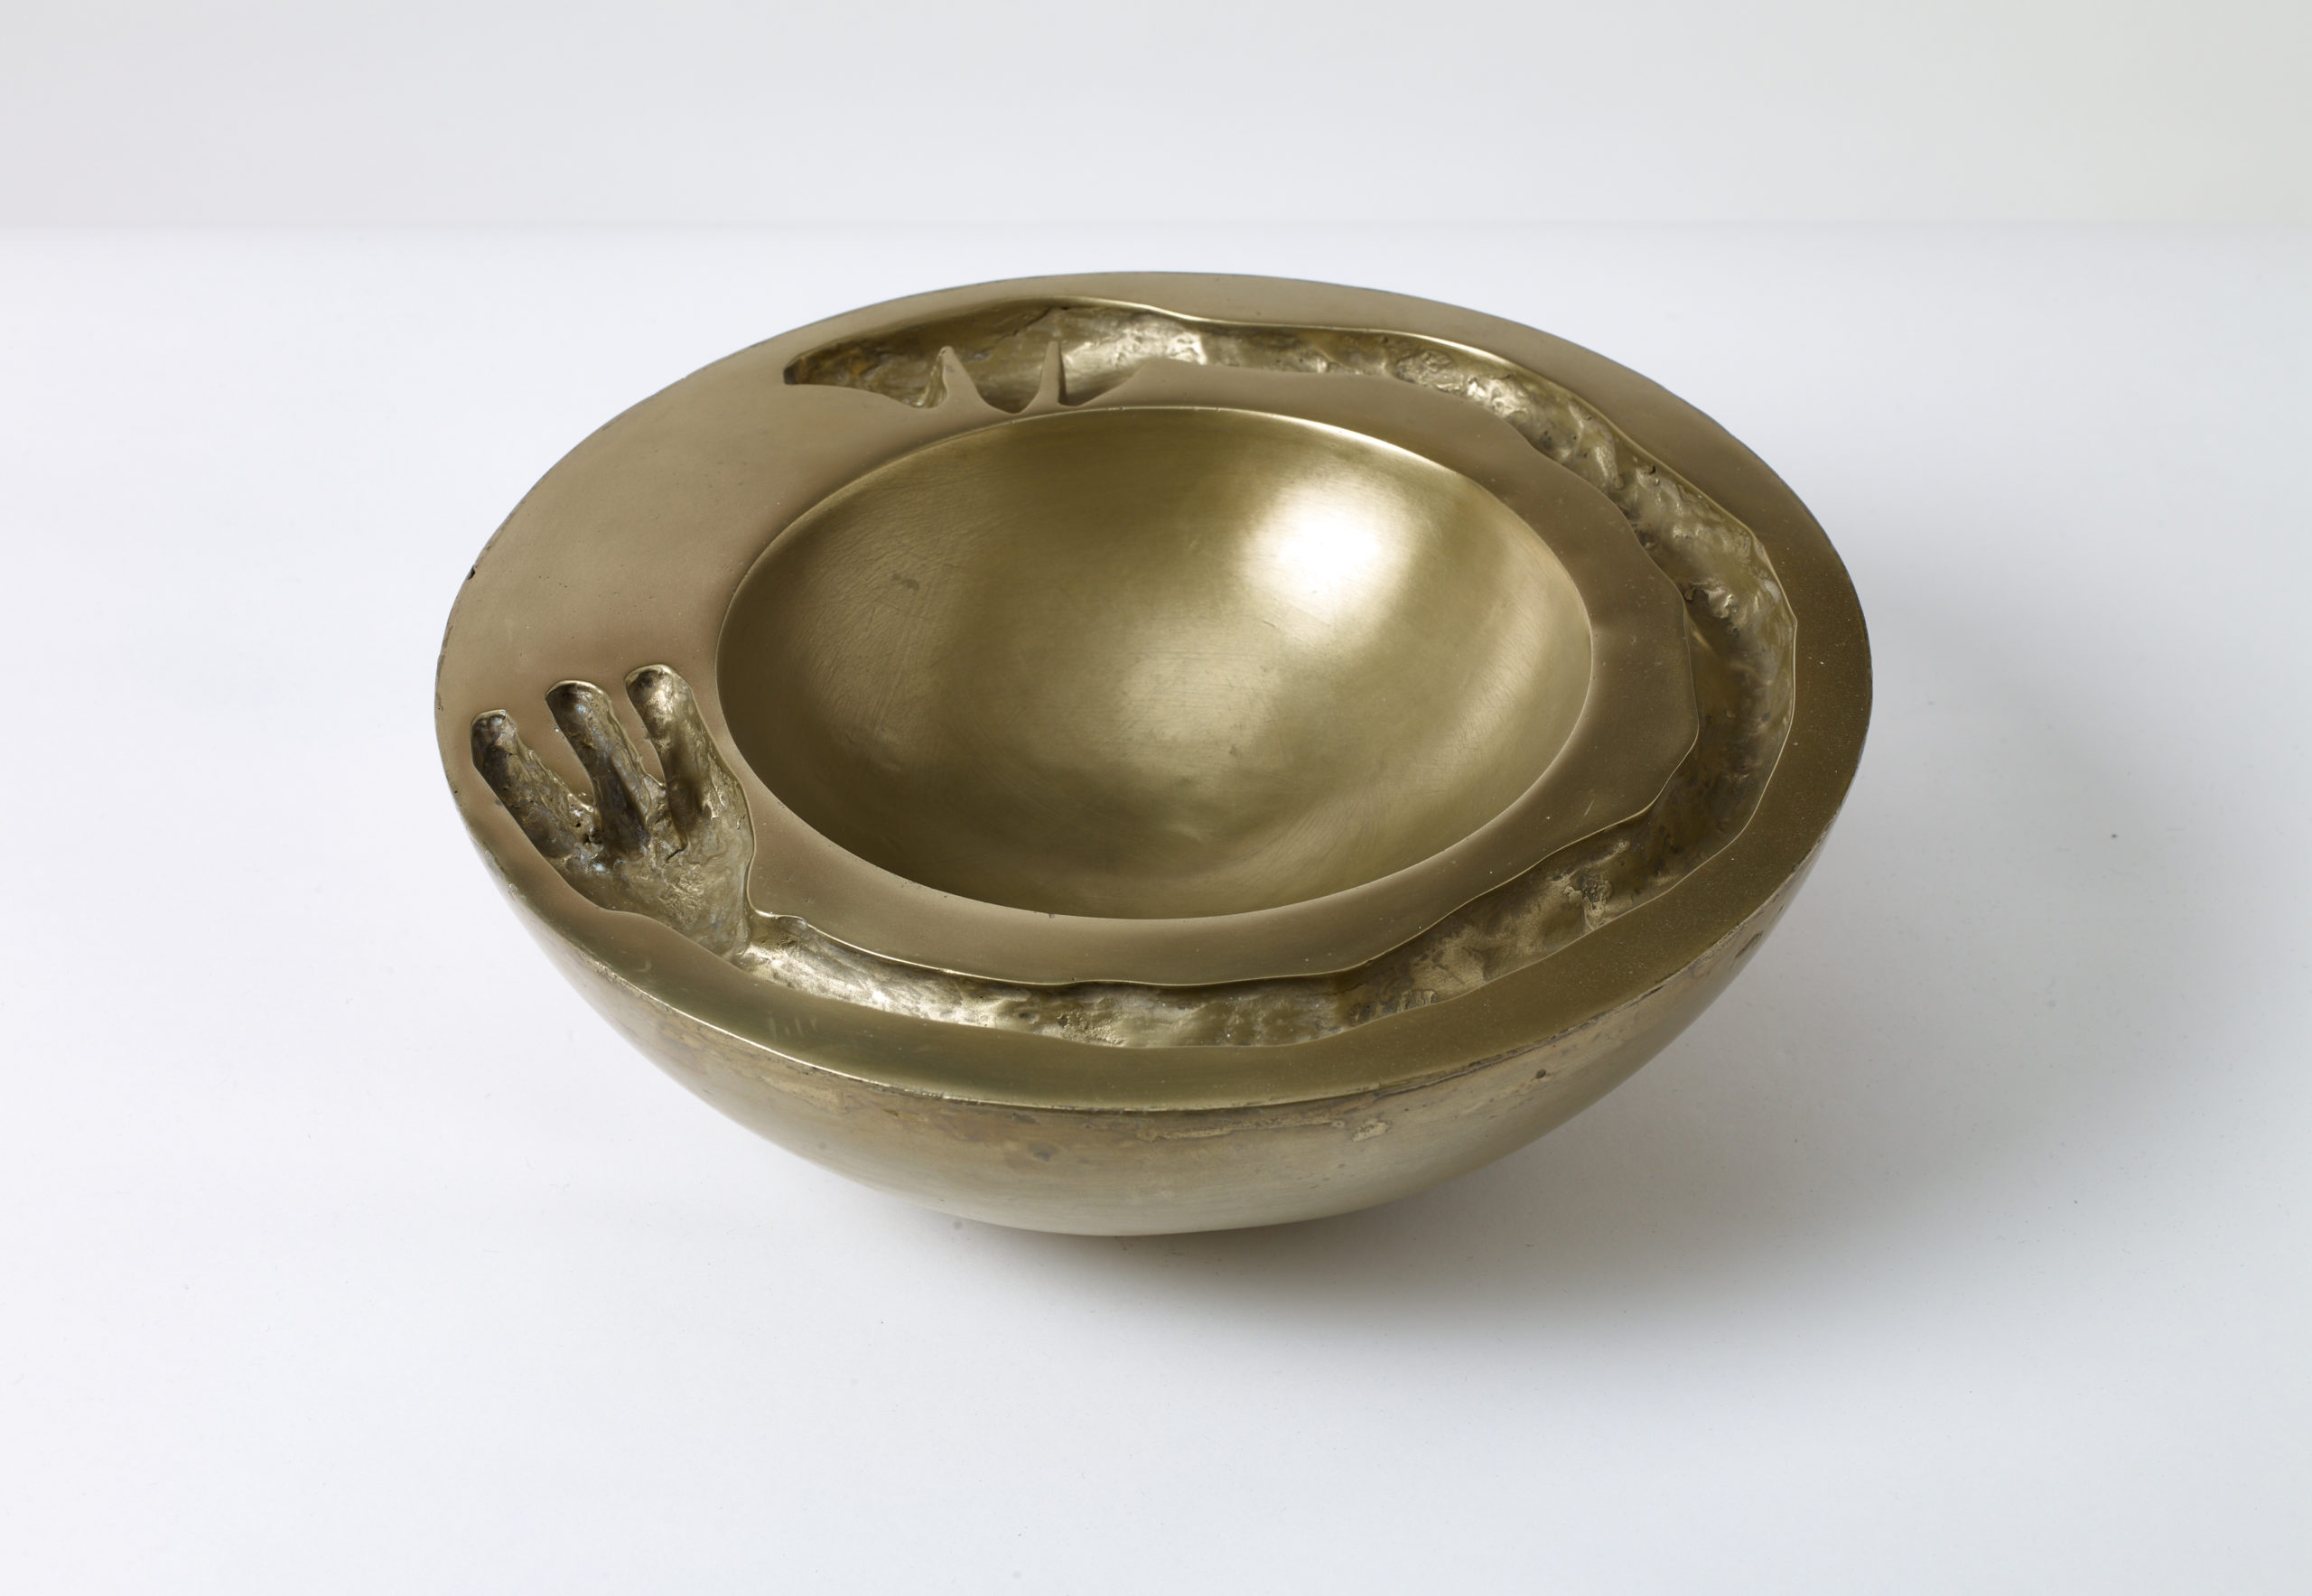 Brass, 30 x 18 x 10cm, outer diameter x inner diameter x height, 2019.